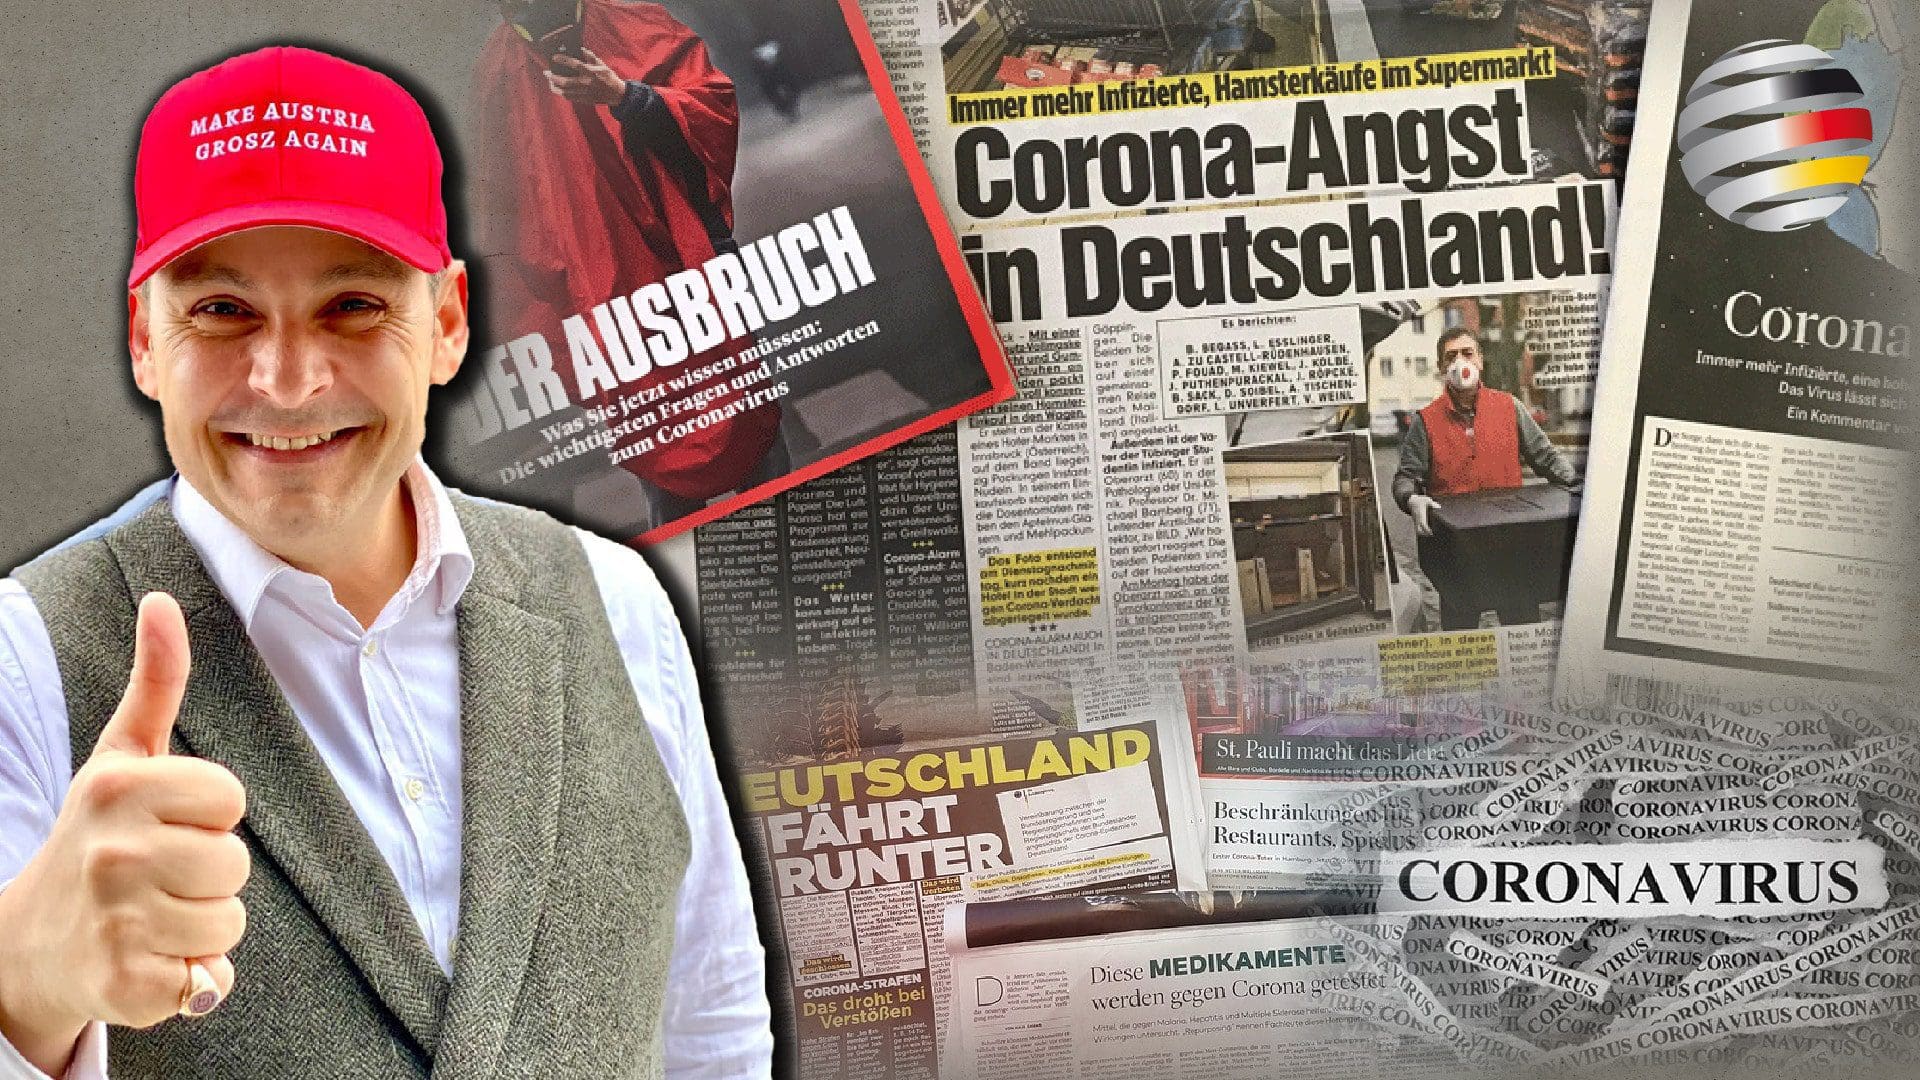 corona-panikmache:-die-absurde-heuchelei-der-deutschen-medien |-ein-kommentar-von-gerald-grosz